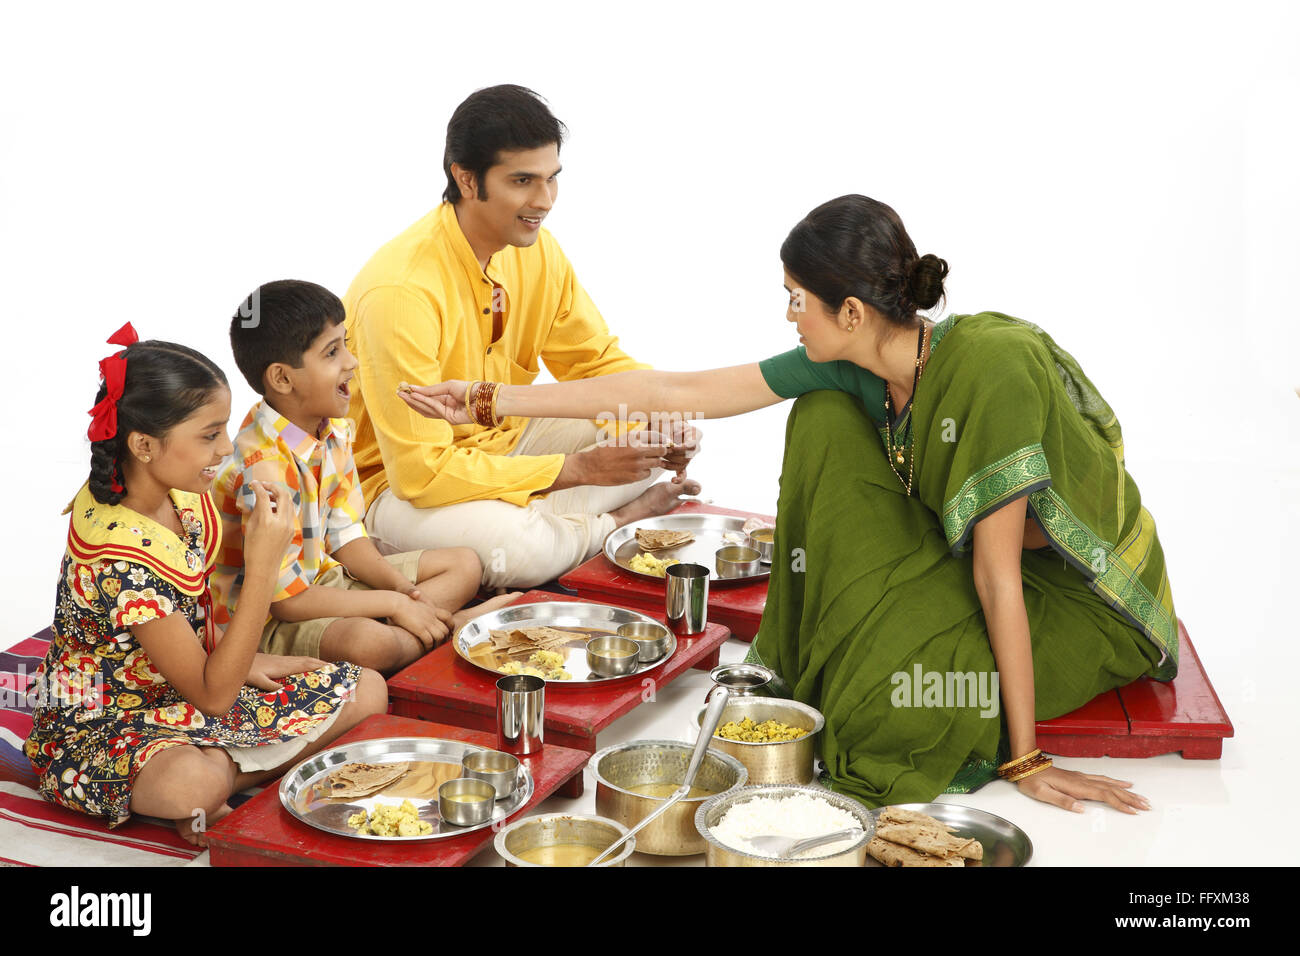 Famille indienne manger déjeuner, père et deux enfants manger de la nourriture et mère nourrir son, Inde, Asie, MR#743A,743B,743C,743D Banque D'Images